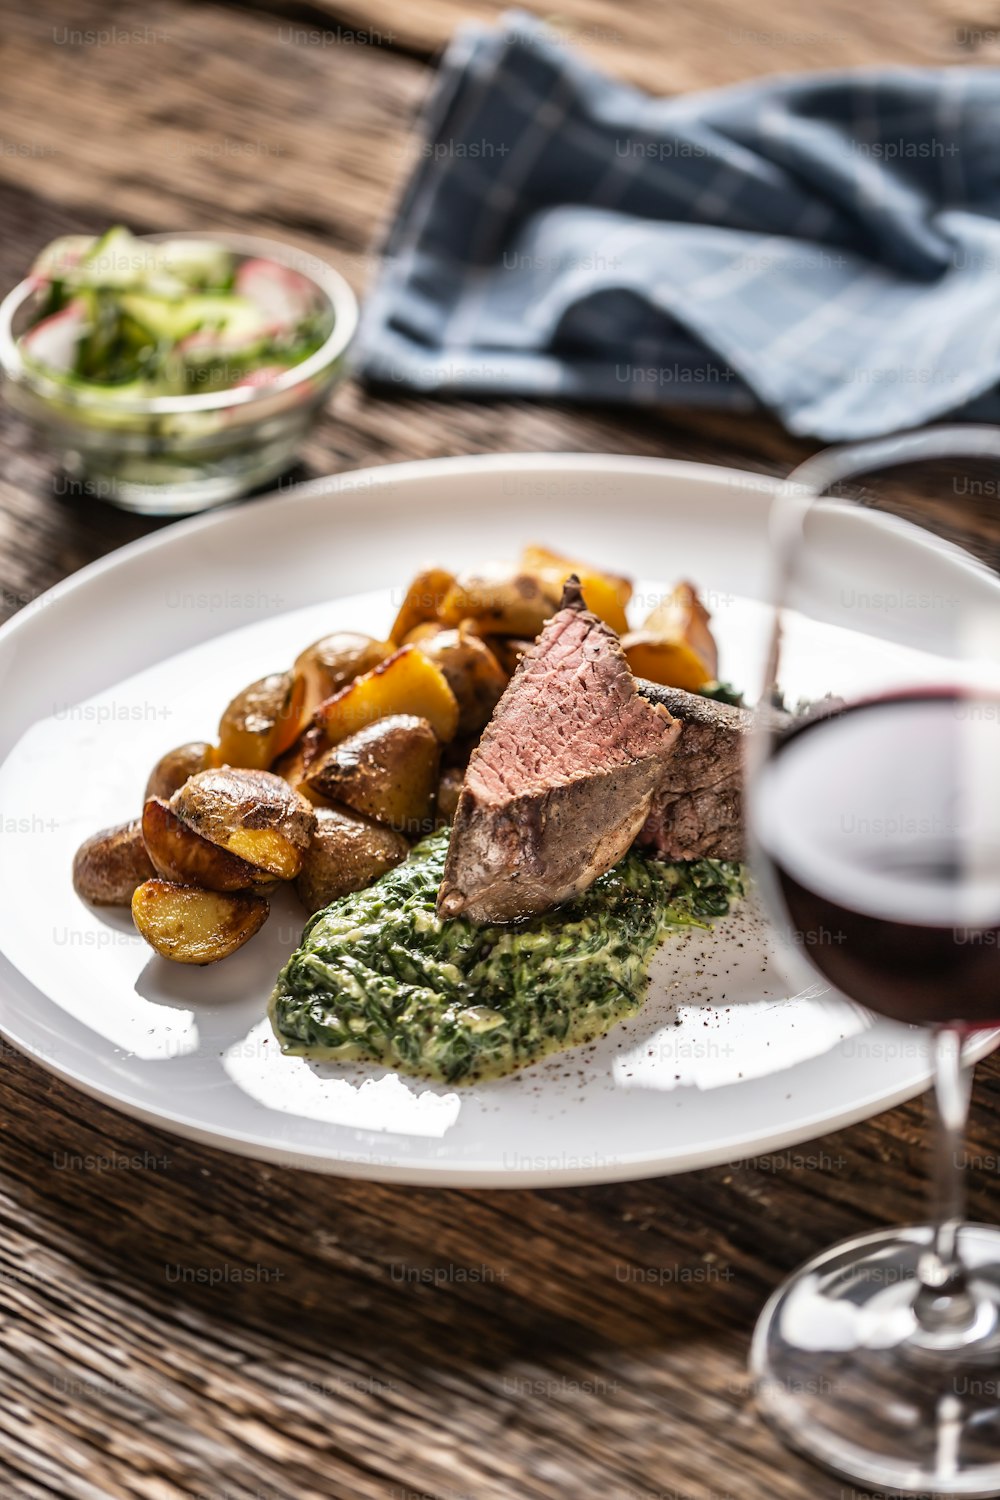 Du vin rouge comme plat typique à un steak de viande rouge sous vide avec des pommes de terre rôties, une trempette aux épinards et une salade fraîche servie sur une assiette en porcelaine blanche sur le bureau en bois.